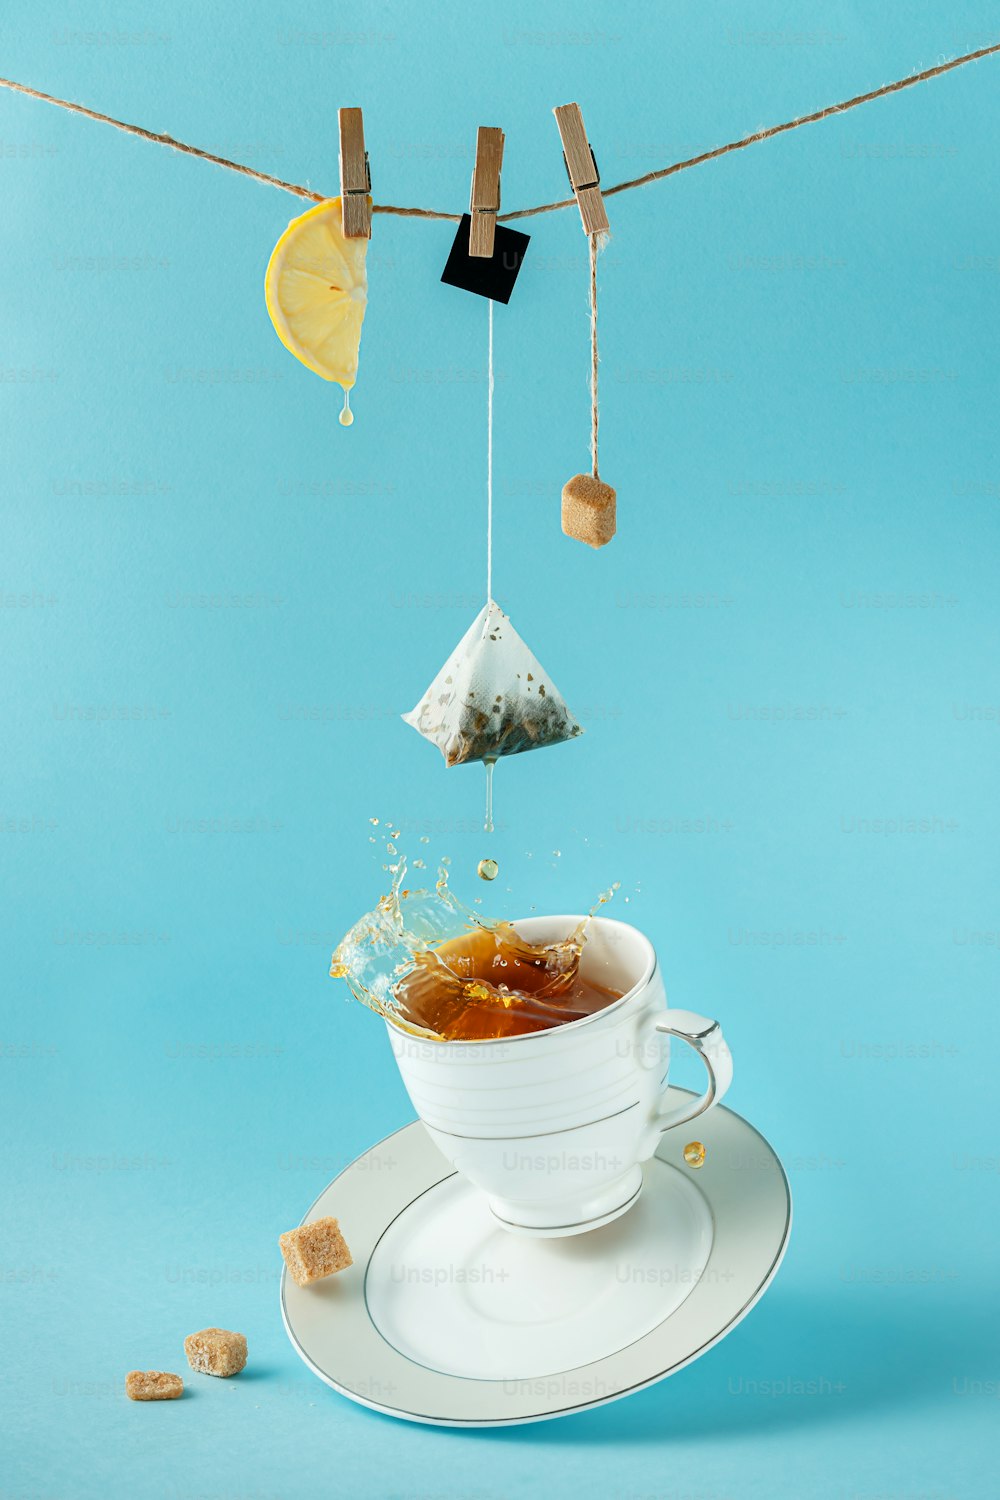 Bustina di tè, limone e zucchero appesi alla corda sopra la spruzzata di tè nella tazza su sfondo blu. Natura morta creativa